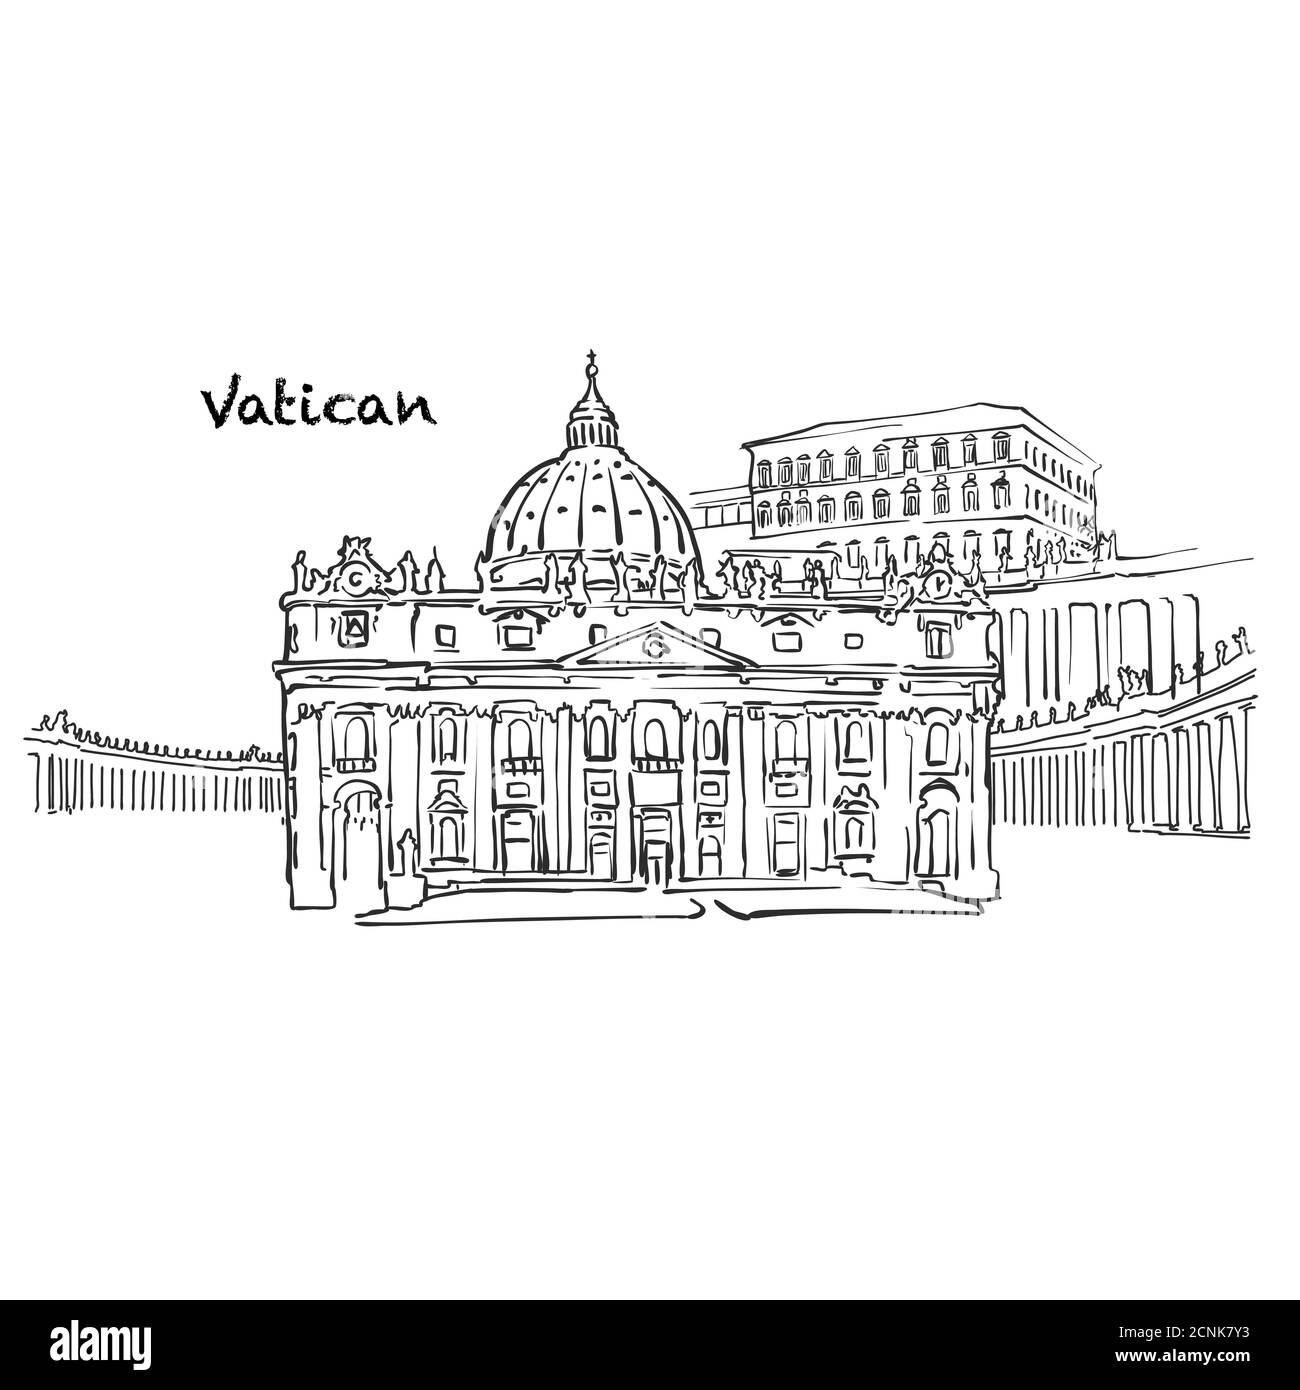 Berühmte Gebäude des Vatikans, Heilige Stuhl Komposition. Handgezeichnete schwarz-weiße Vektorgrafik. Gruppierte und bewegliche Objekte. Stock Vektor